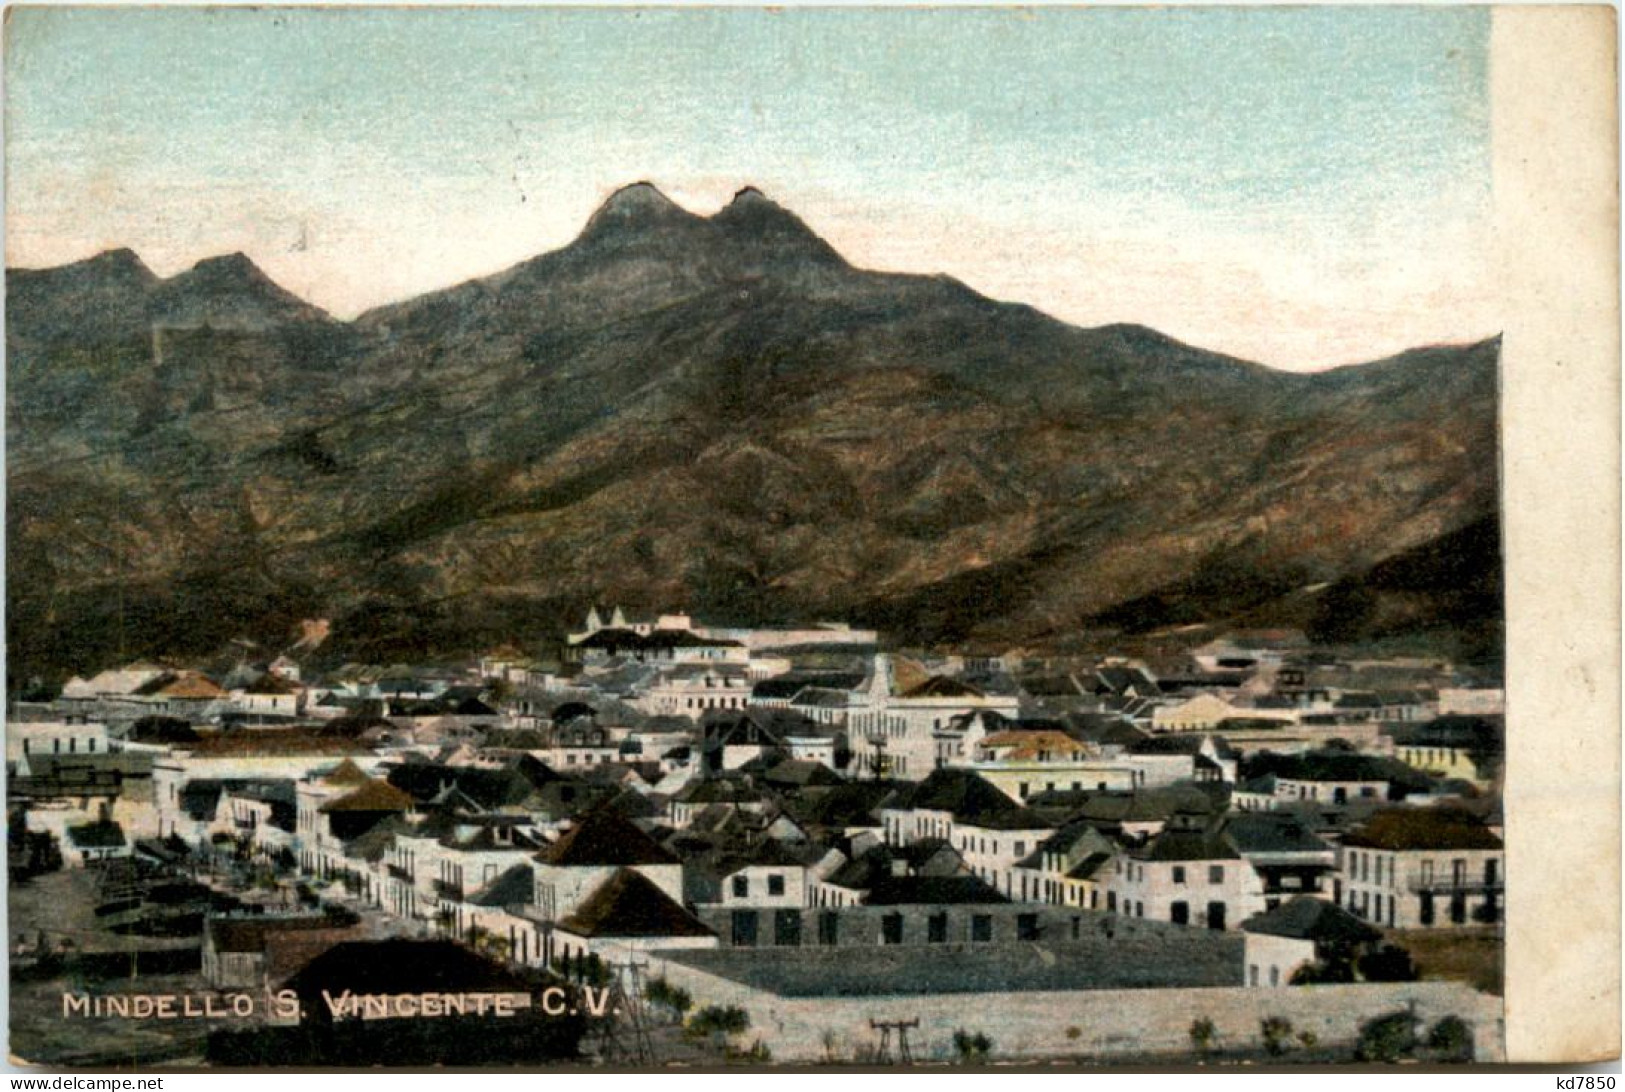 Mindello S. Vincente - Capo Verde